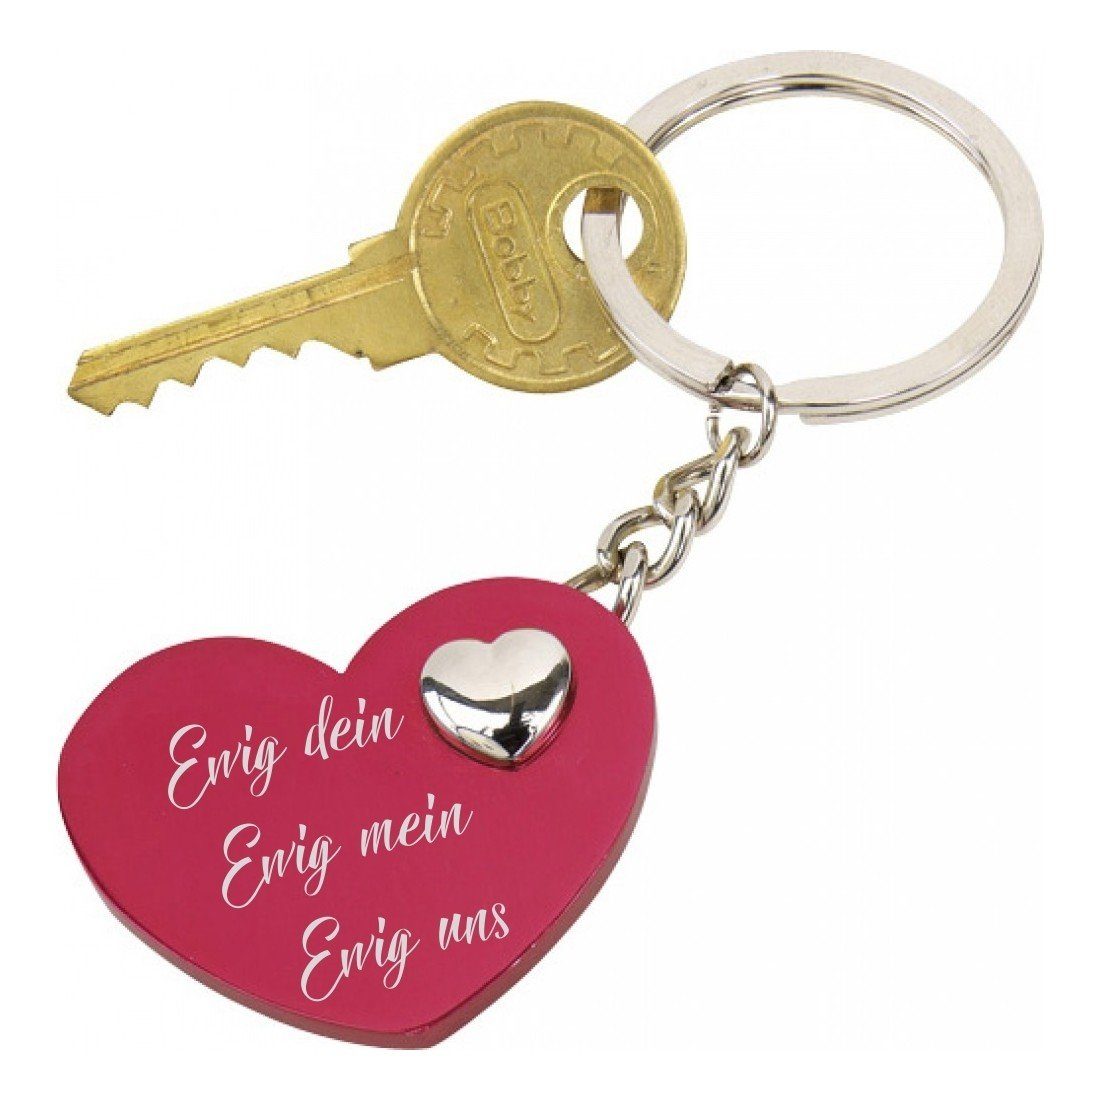 Lieblingsmensch Schlüsselanhänger Ewig dein Ewig mein Ewig uns - rotes Herz - ein tolles Geschenk (Schlüsselanhänger mit Gravur, inklusive Schlüsselring), Robuste und filigrane Lasergravur